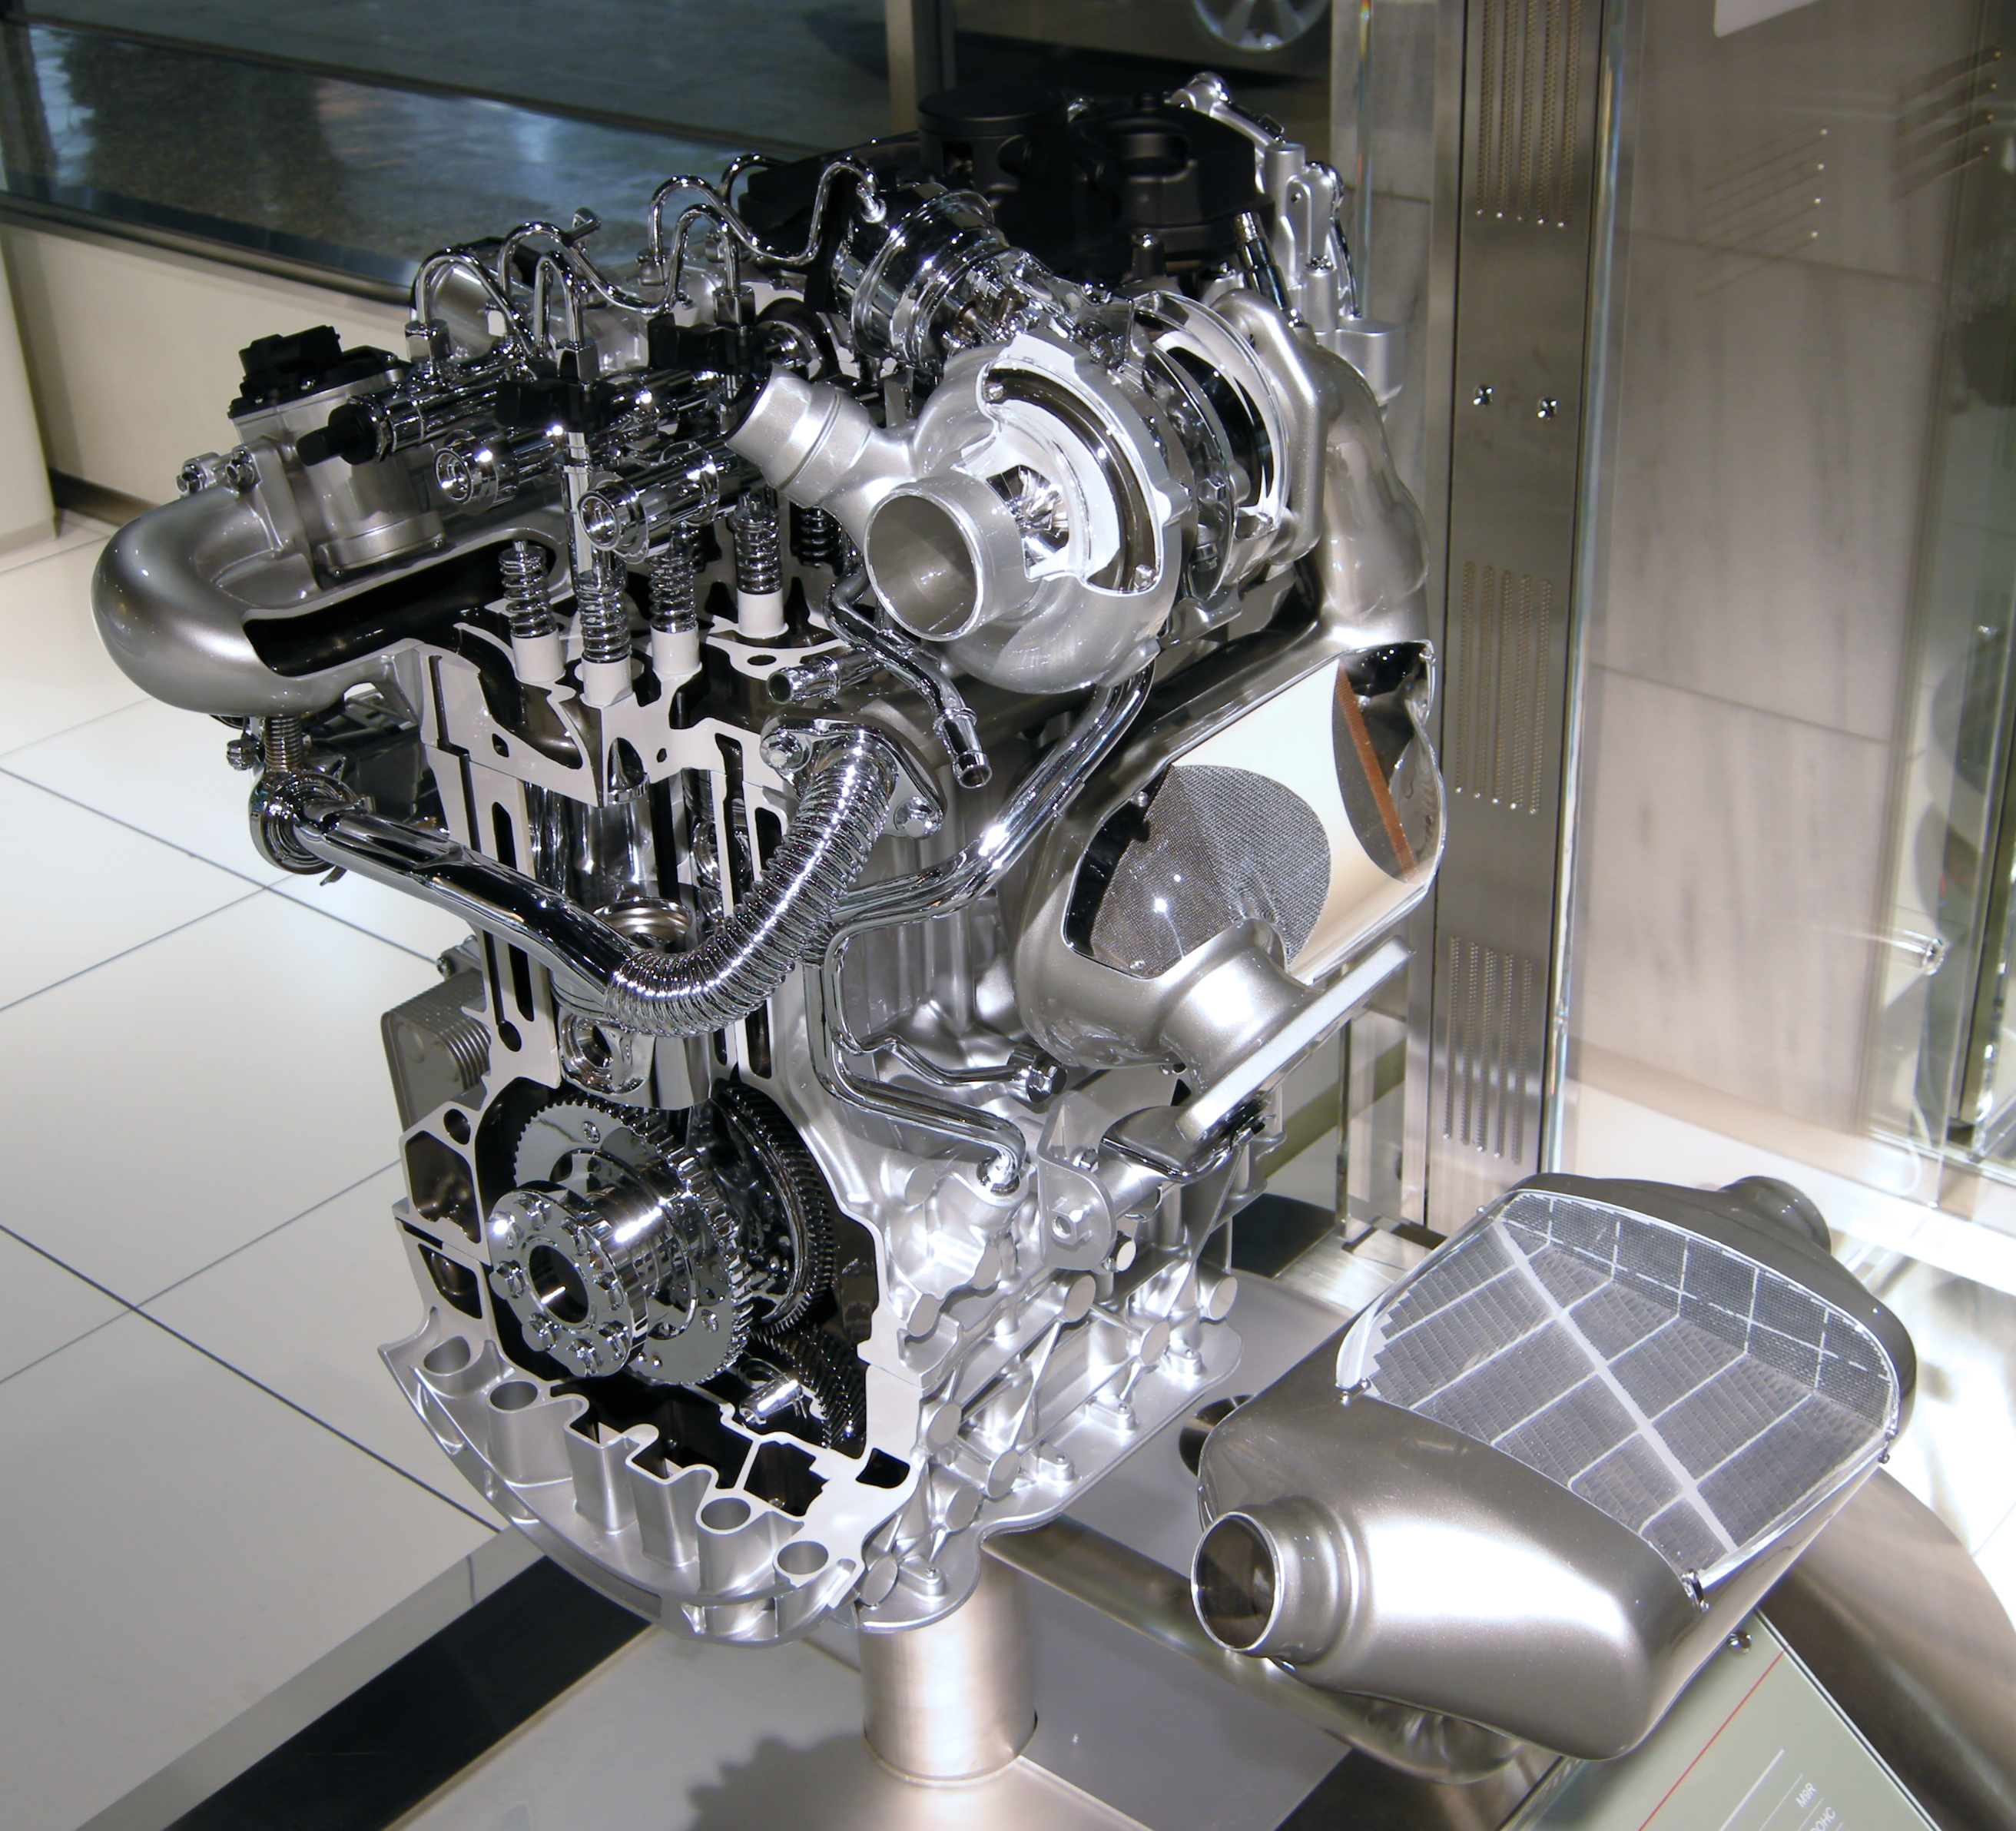 Nissan pathfinder 2.5 diesel engine problems #7